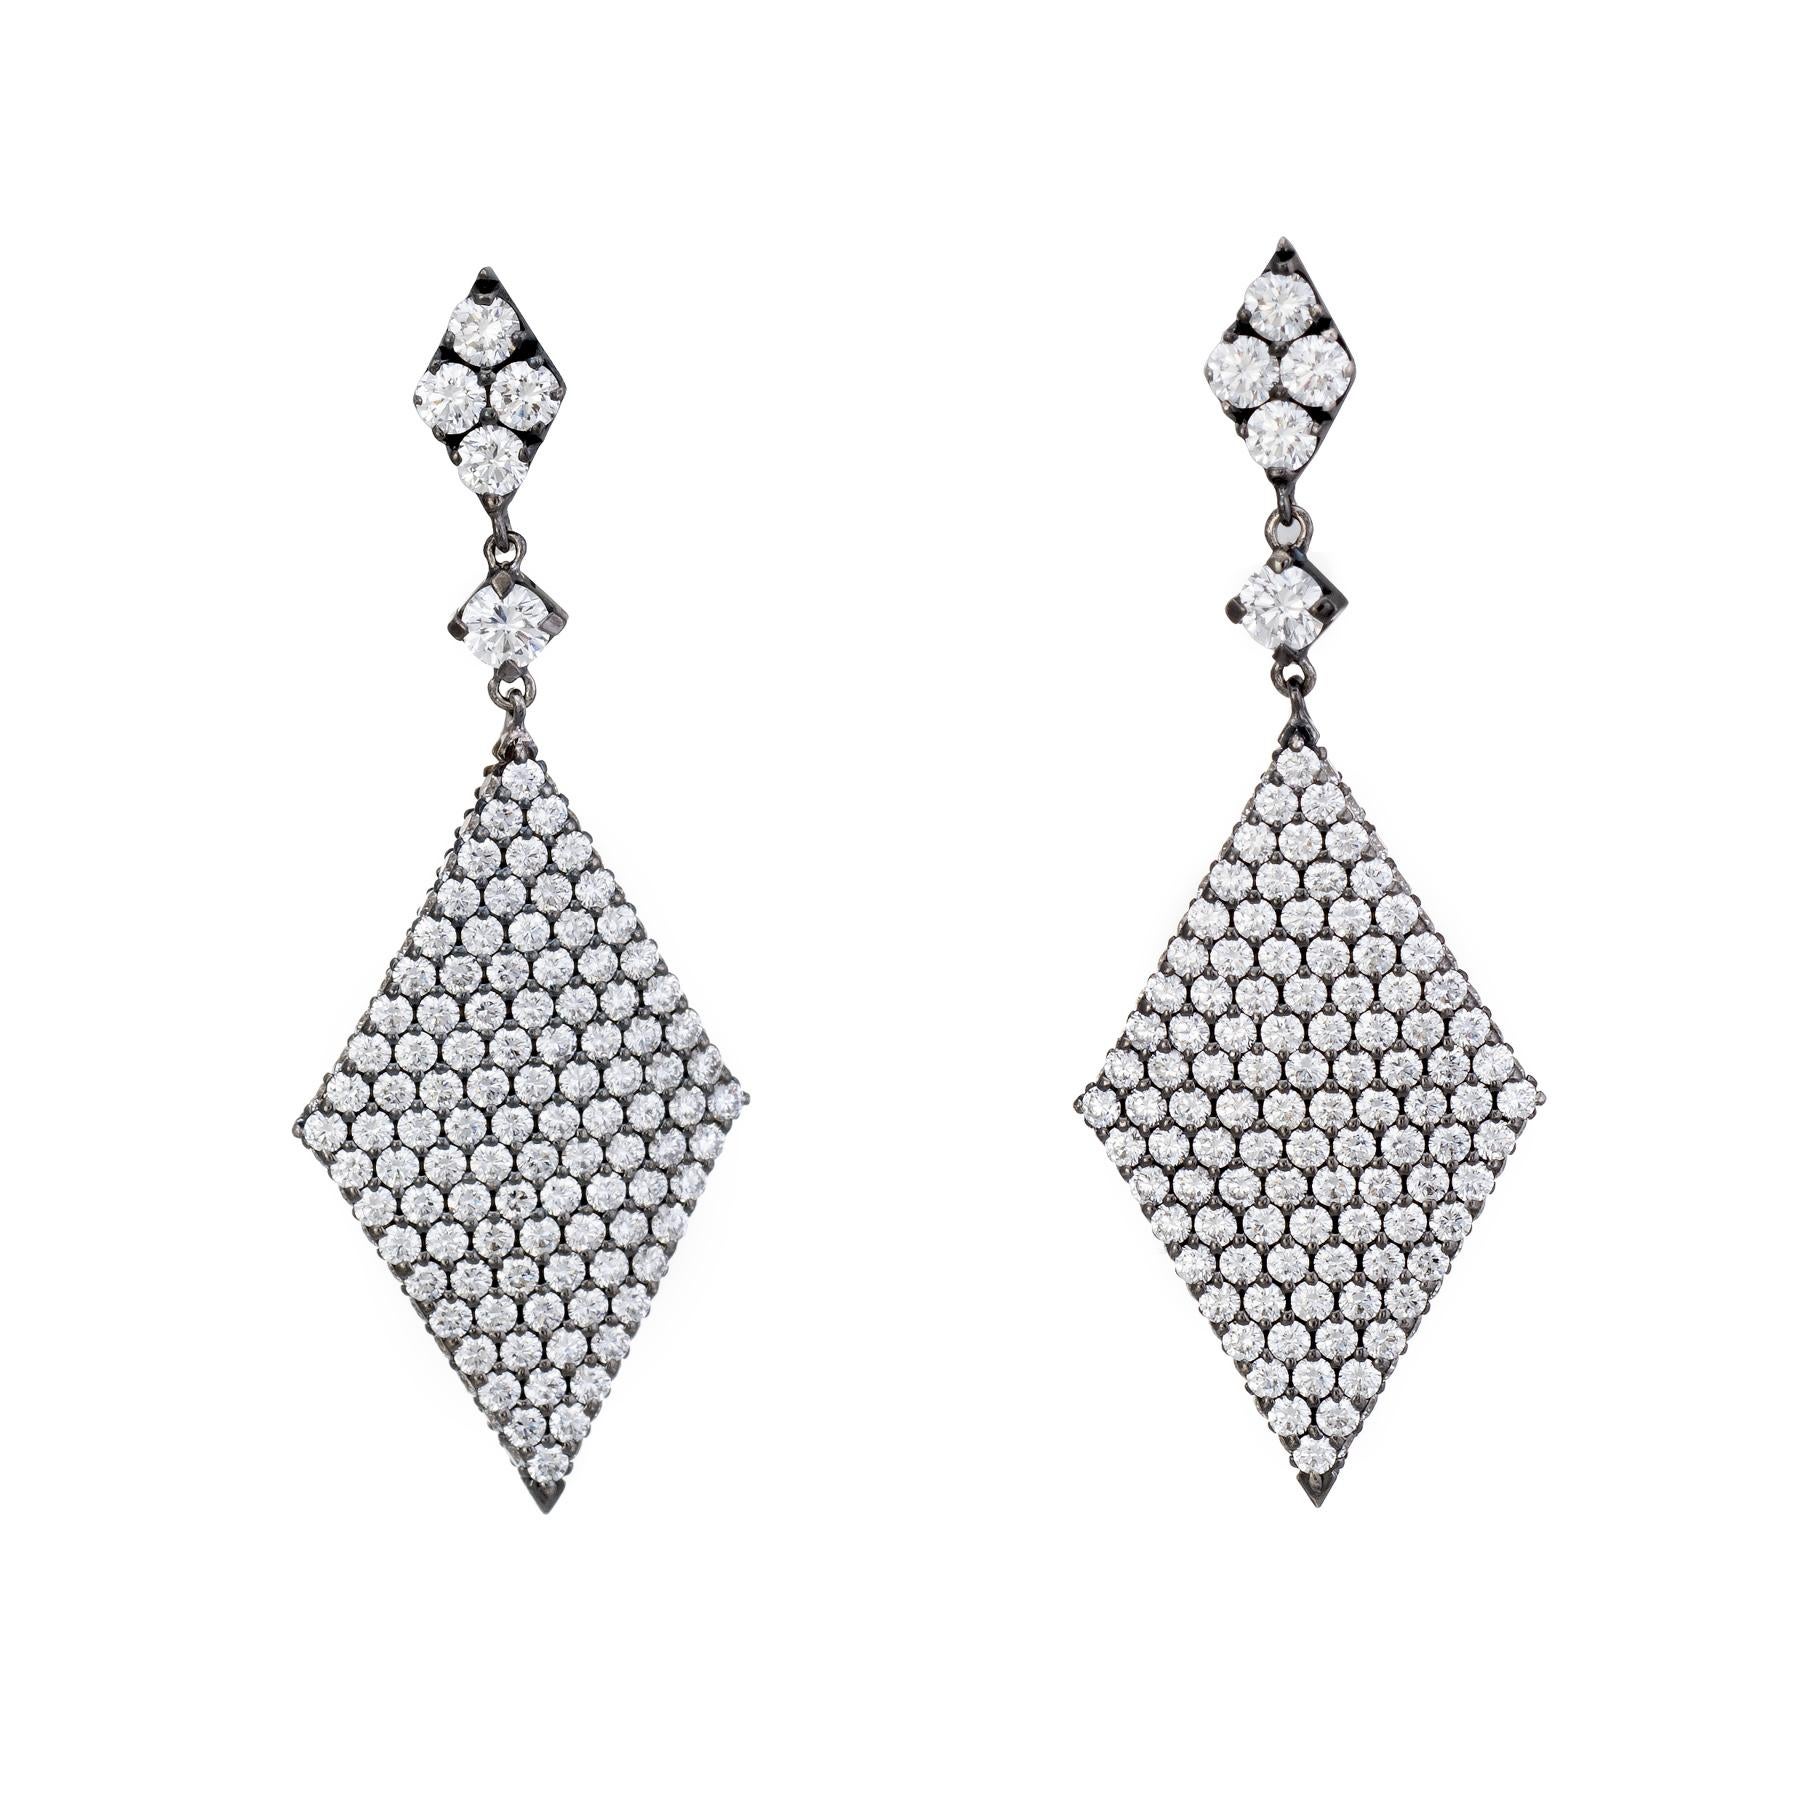 Élégante paire de boucles d'oreilles pendantes en forme de triangle, fabriquées en or noirci 18 carats. 

La taille des diamants ronds de taille brillant varie de 0,01 à 0,02 carats, pour un total estimé à 1,66 carats. Les diamants sont estimés de